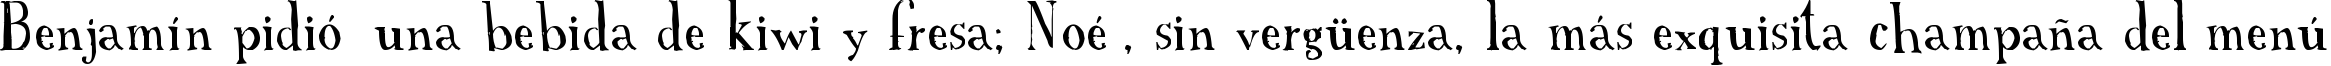 Пример написания шрифтом A Font with Serifs текста на испанском